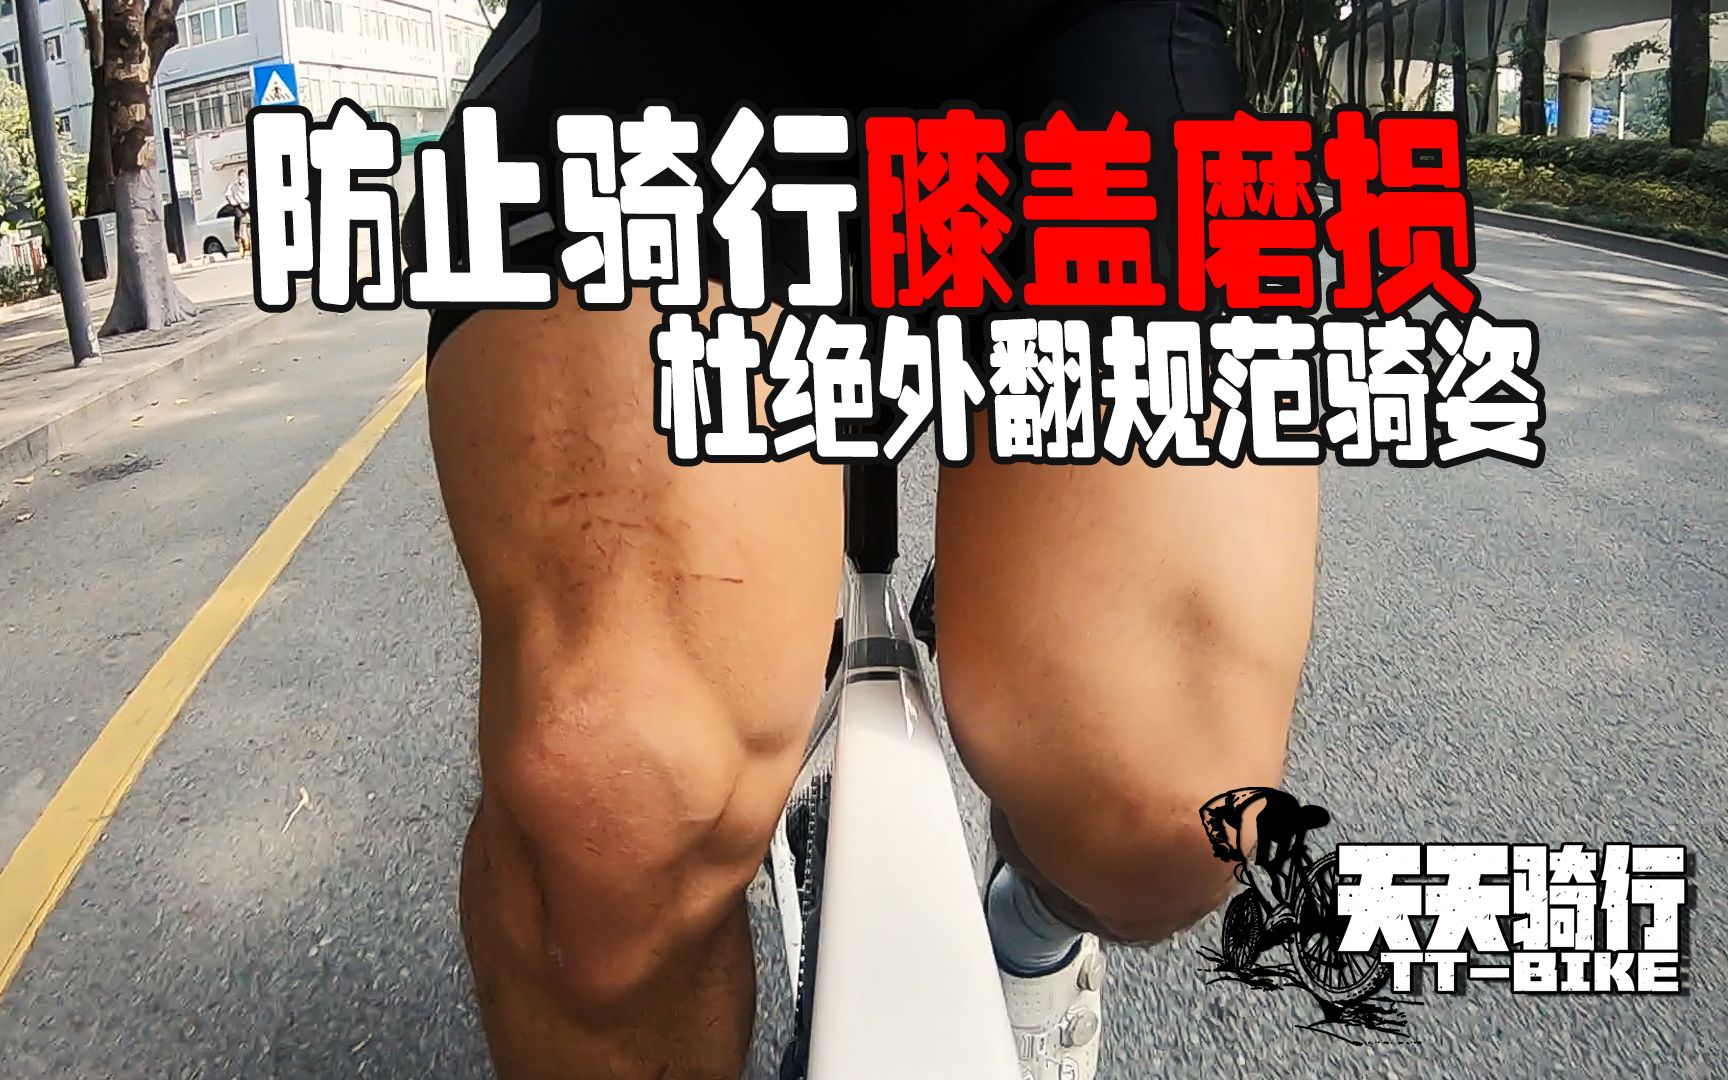 天天骑行 | 防止骑行膝盖磨损 请杜绝膝盖外翻规范骑姿健康骑行保护膝盖